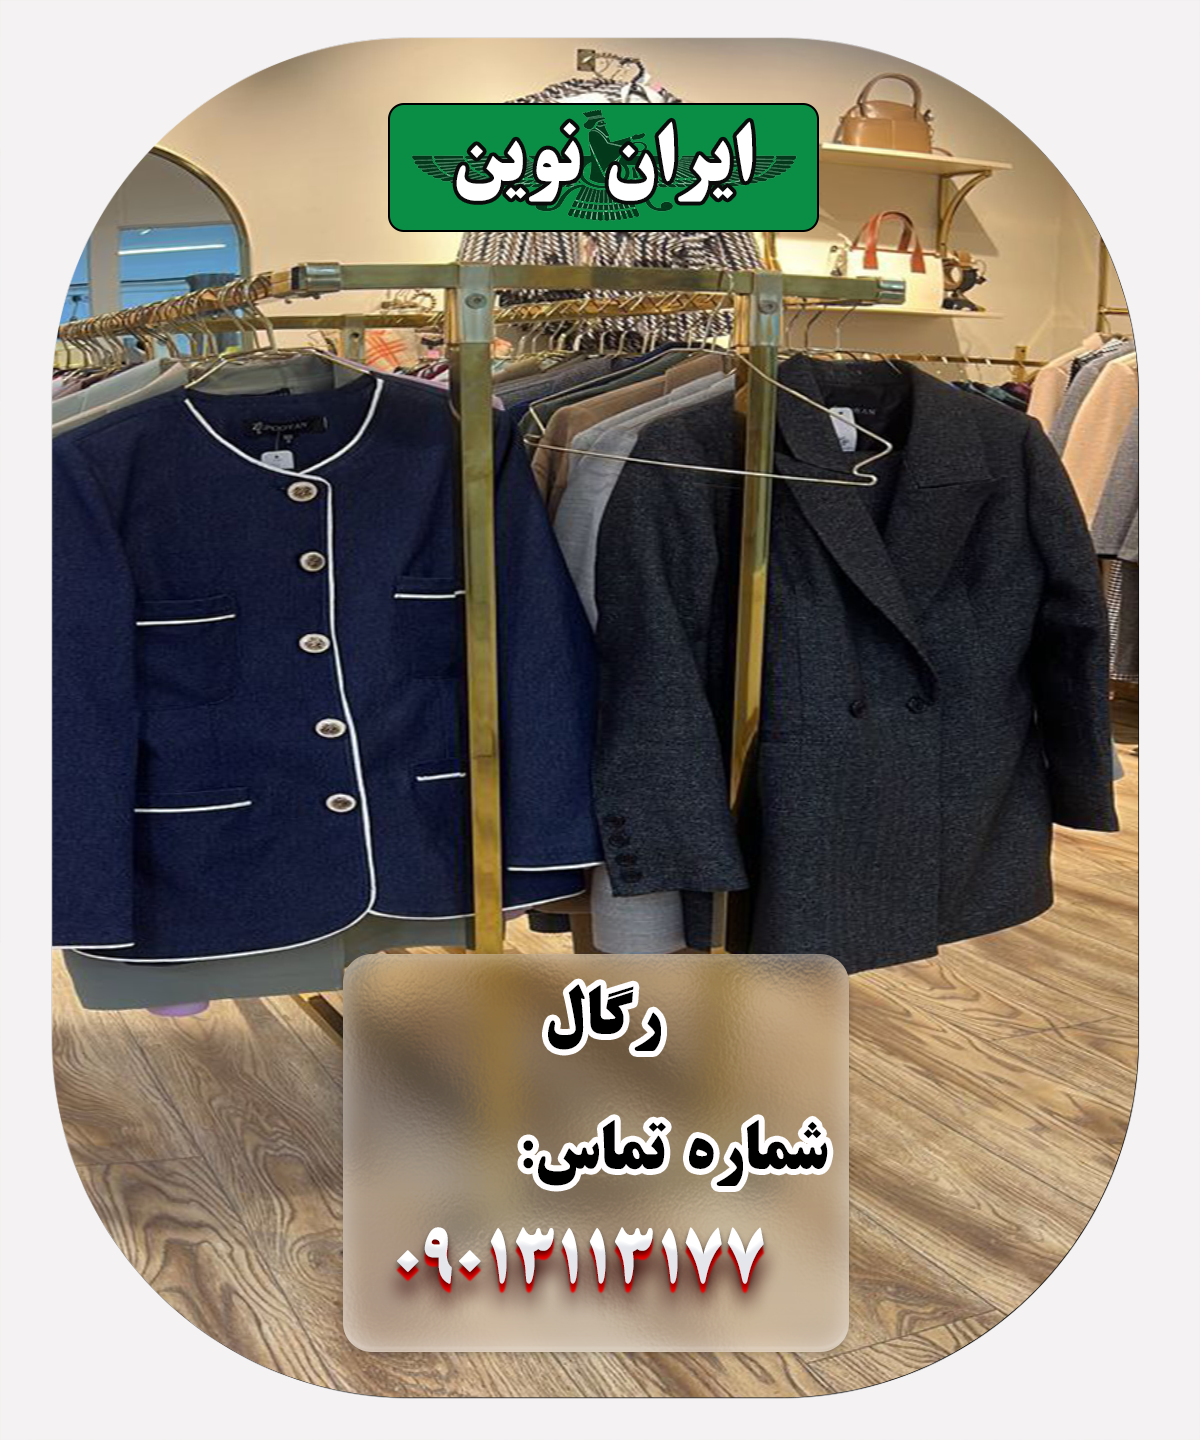 رگال لباس ایران نوین: انعطاف پذیری در استایل